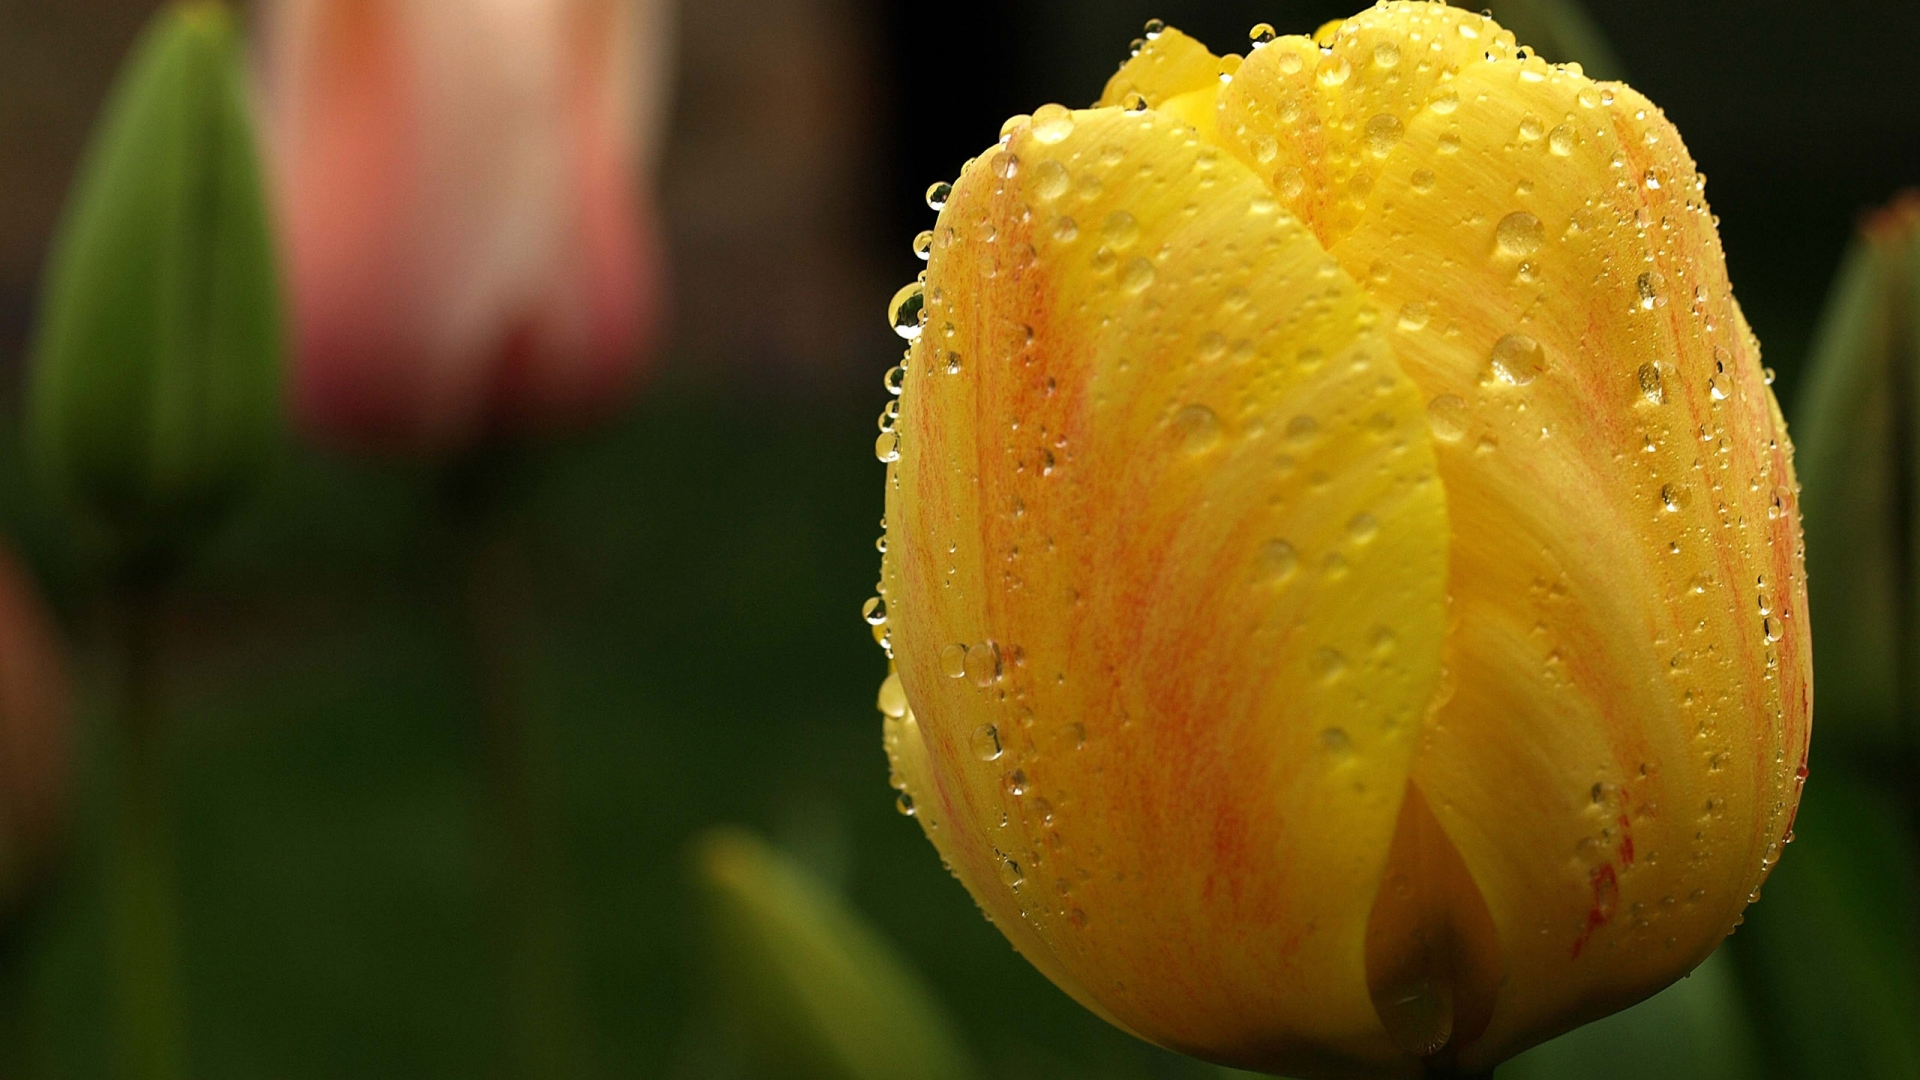 Orange Tulip Close Up for 1920 x 1080 HDTV 1080p resolution